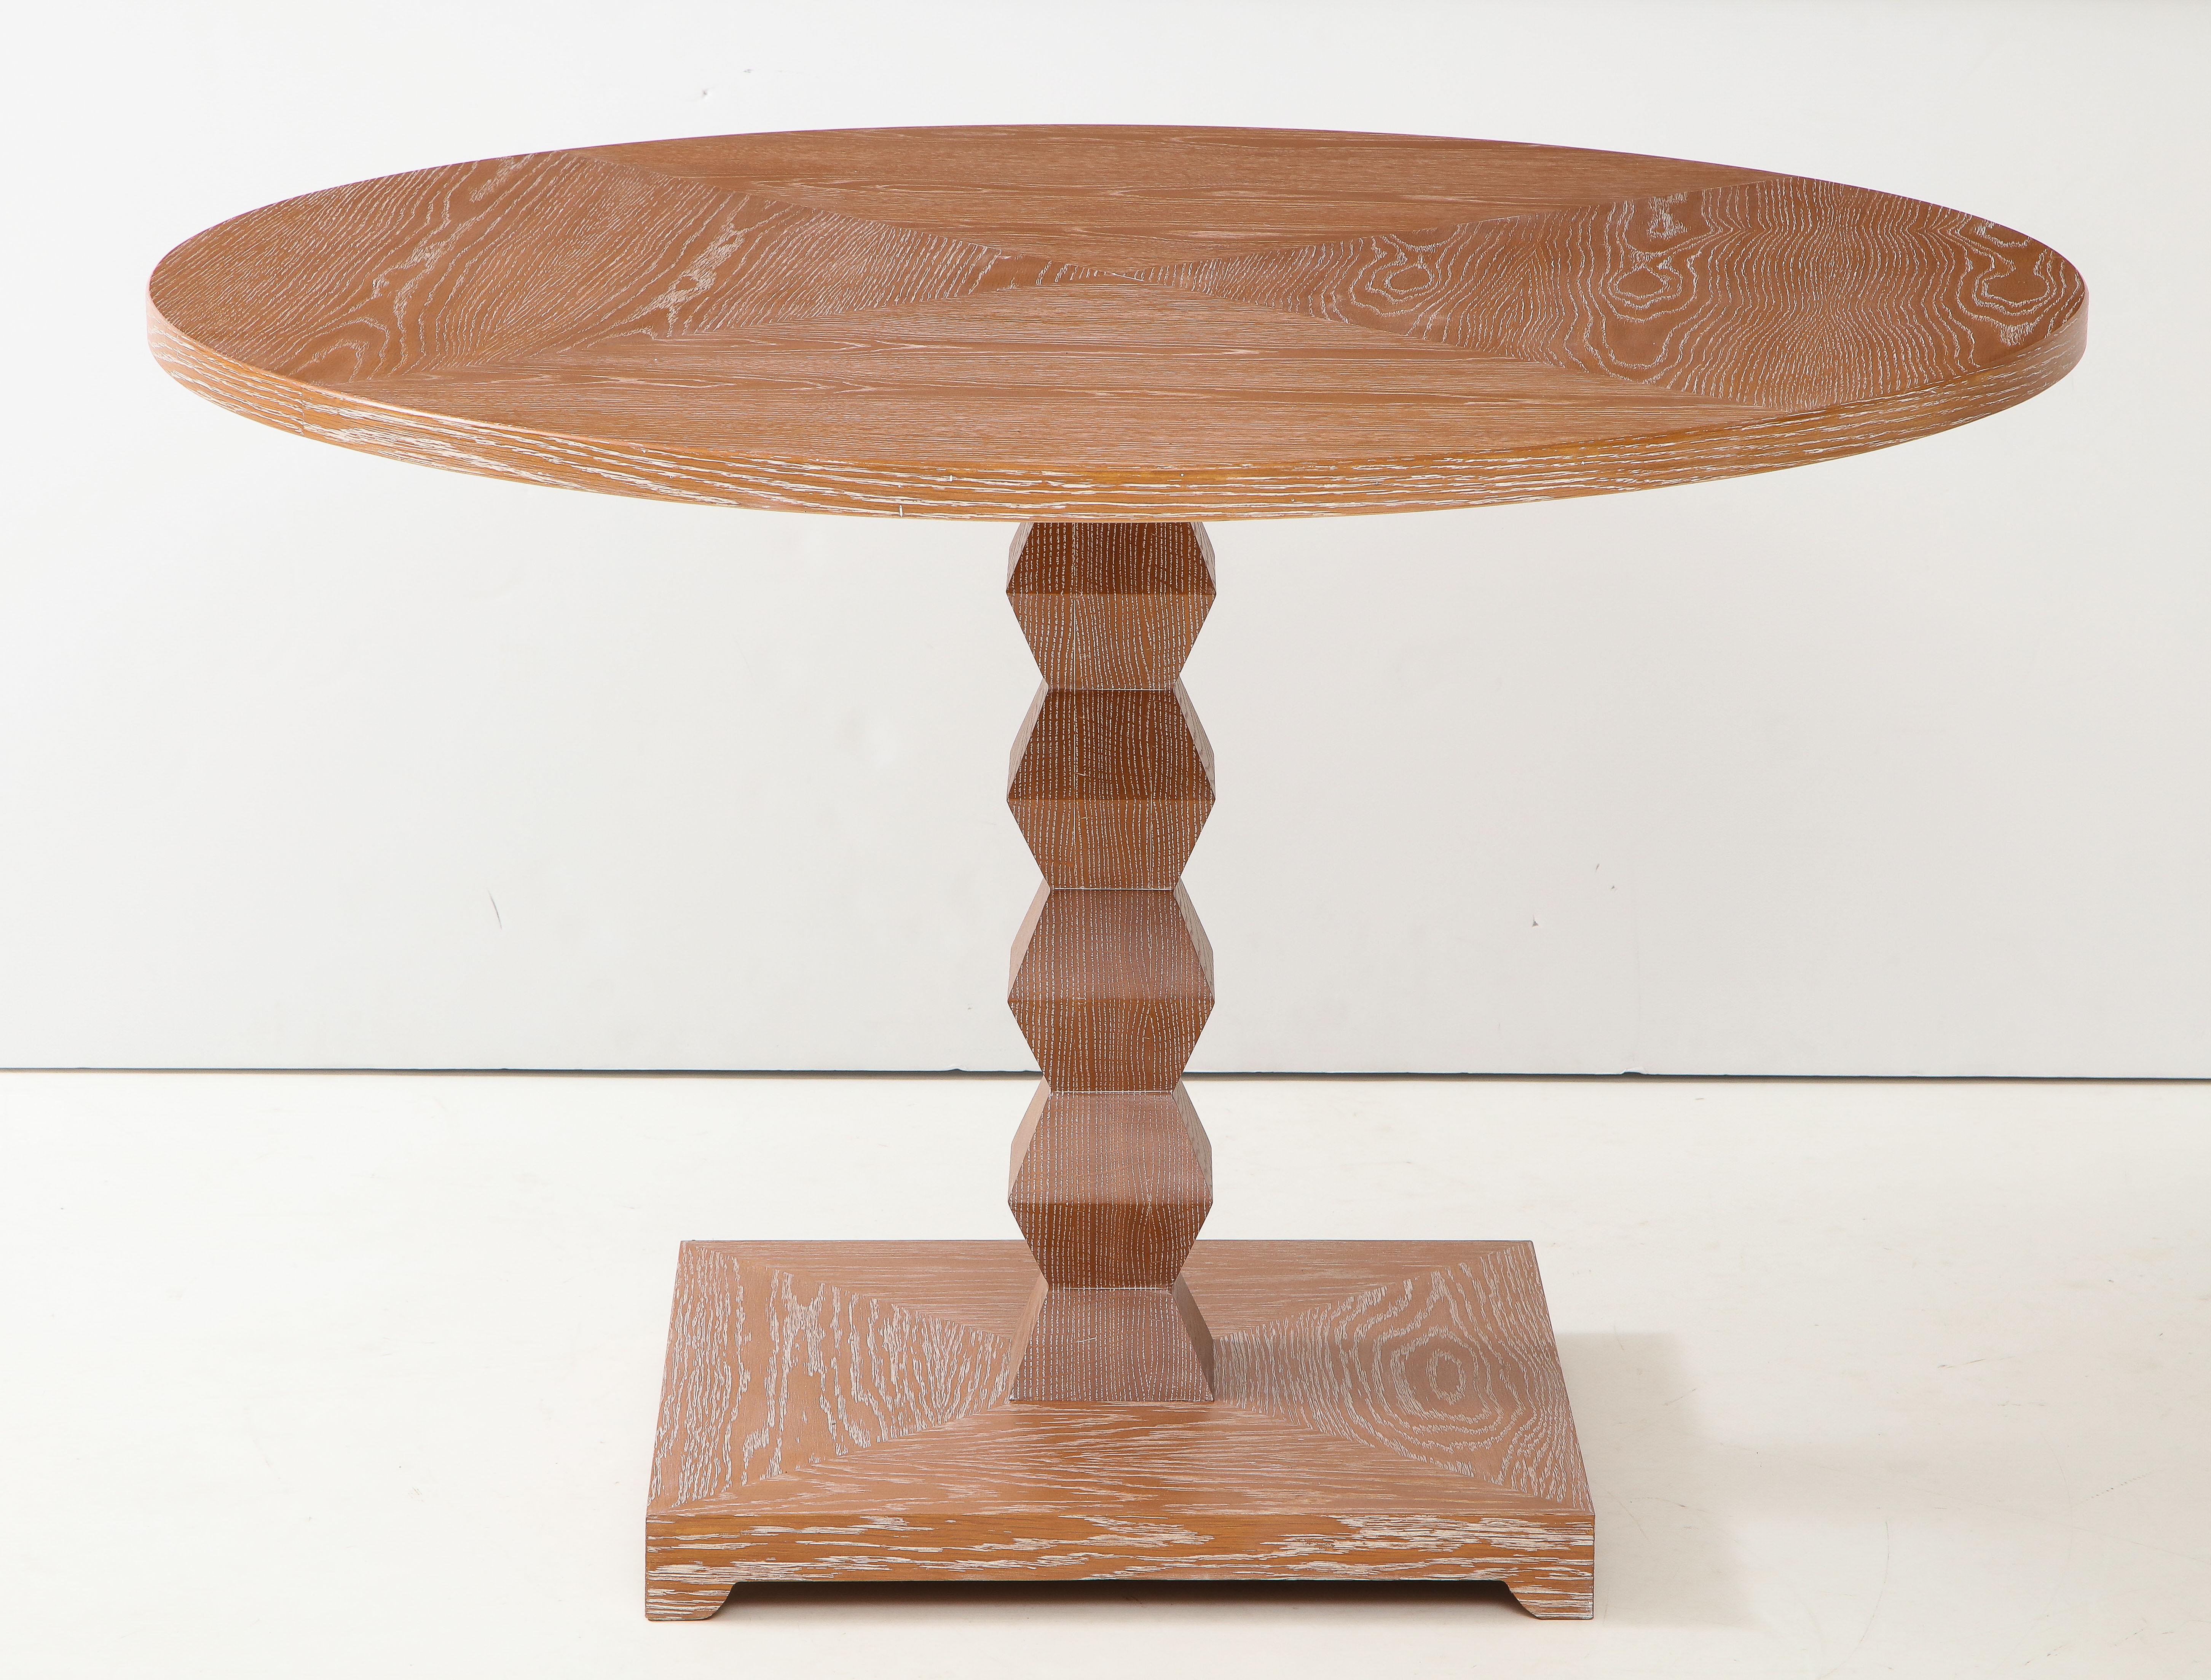 Table centrale en chêne cérusé sur mesure, inspirée du design français des années 1940
Cette pièce est personnalisable.
Le délai de livraison est d'environ 6 à 8 semaines.